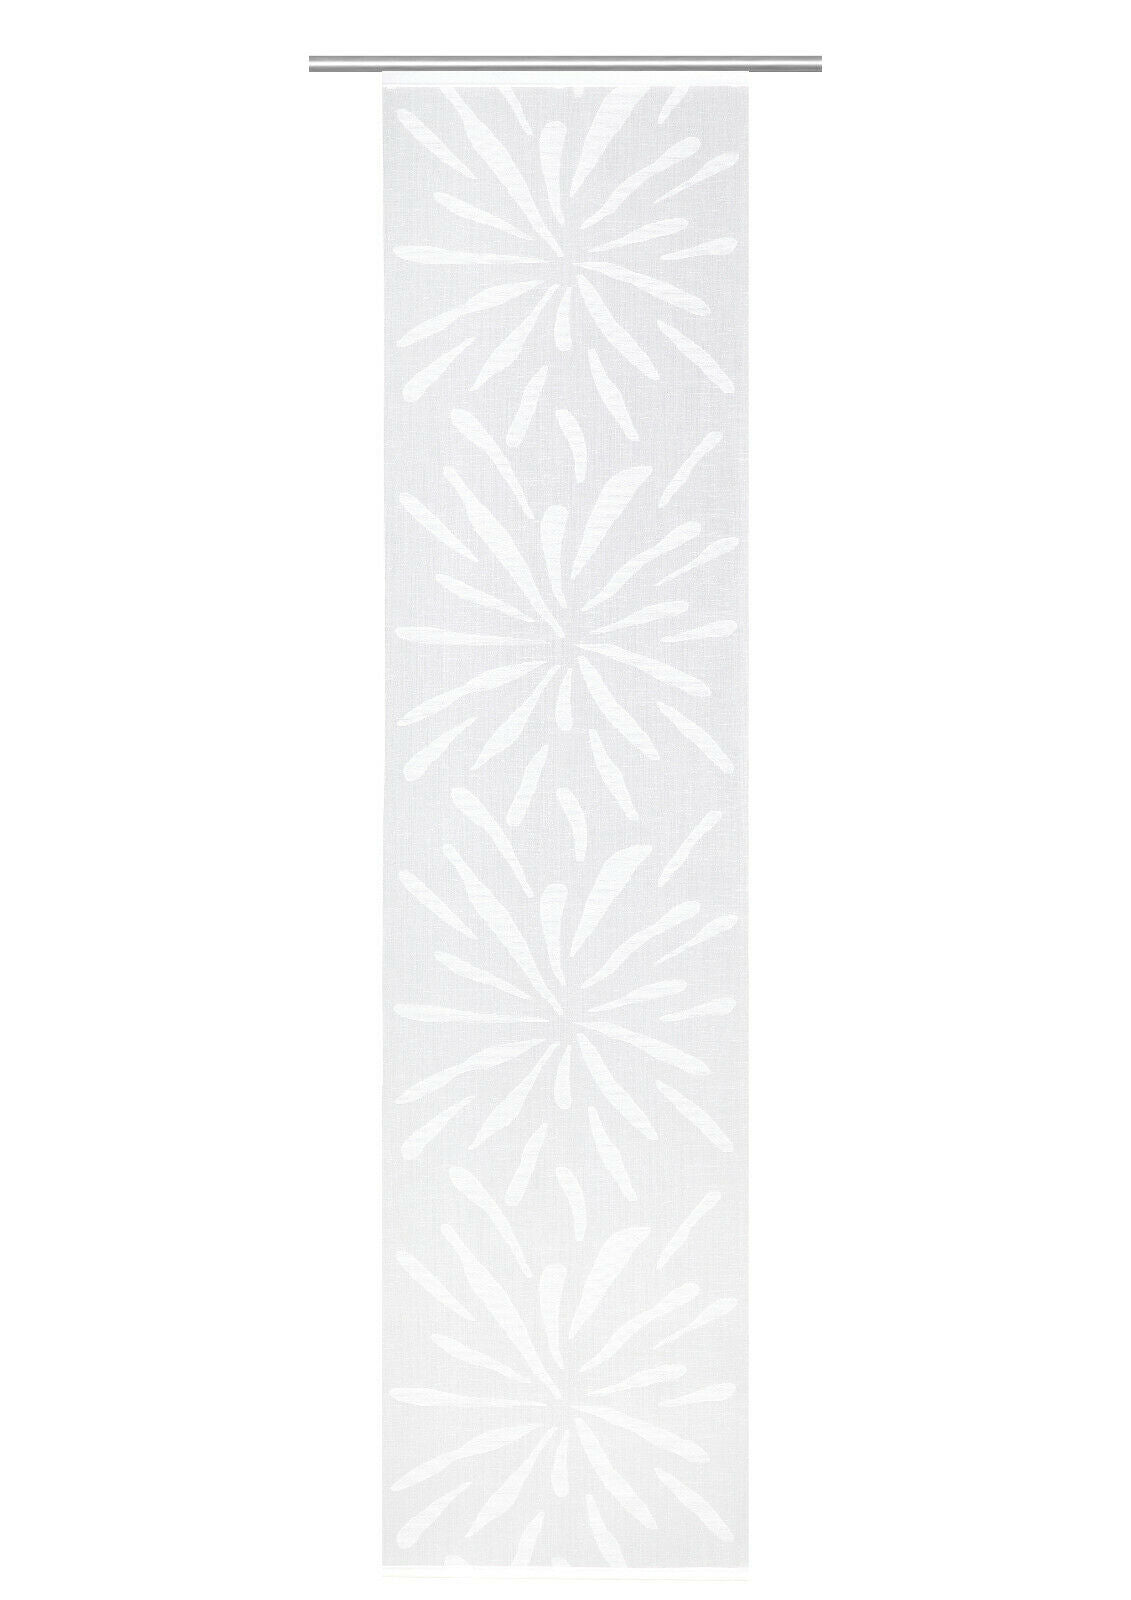 Schiebevorhang Blume weiß BxH 60x245cm halbtransparent